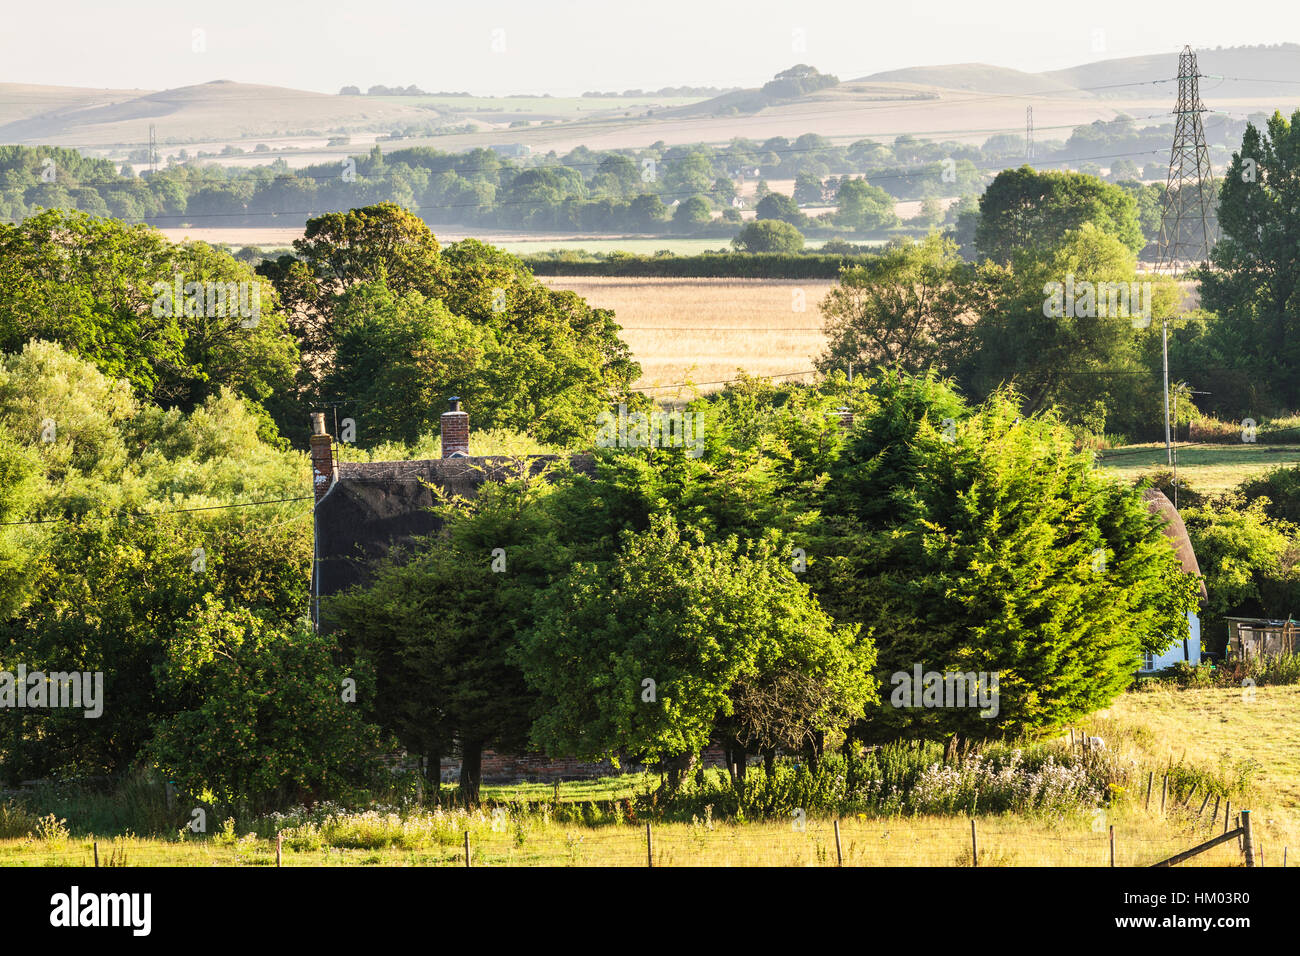 Tipico inglese nella tarda estate del paesaggio di dolci colline e campi coltivati nel Wiltshire, Regno Unito. Foto Stock